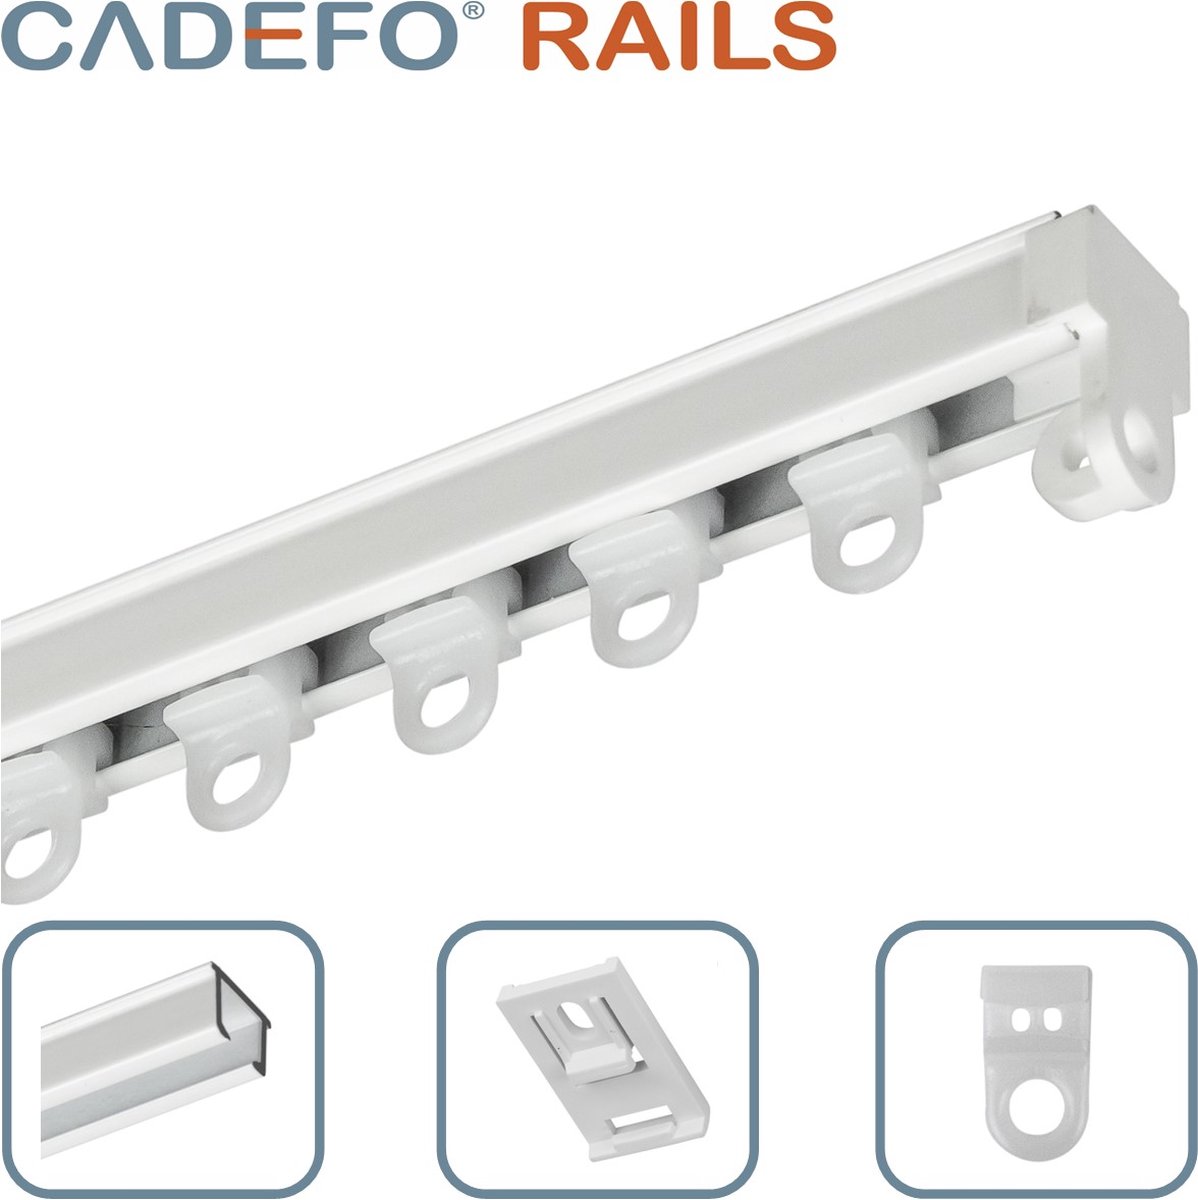 CADEFO RAILS (451 - 500 cm) Gordijnrails - Compleet op maat! - UIT 1 STUK - Leverbaar tot 6 meter - Plafondbevestiging - Lengte 454 cm